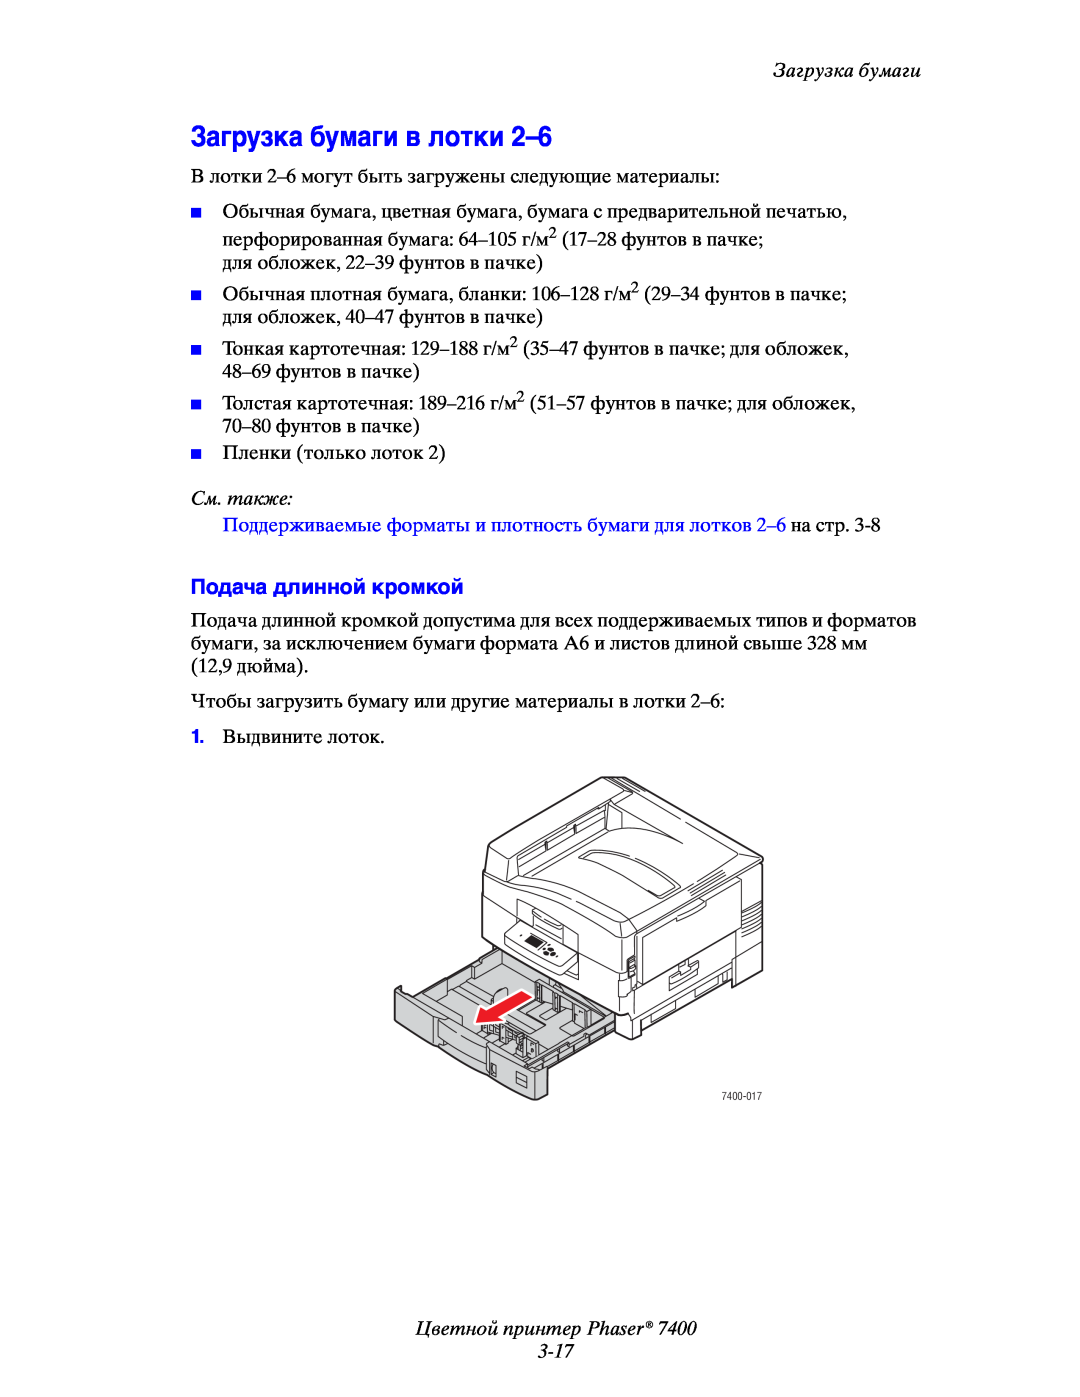 Xerox 7400 manual Загрузка бумаги в лотки 2–6, Цветной принтер Phaser 3-17, Подача длинной кромкой, См. также 